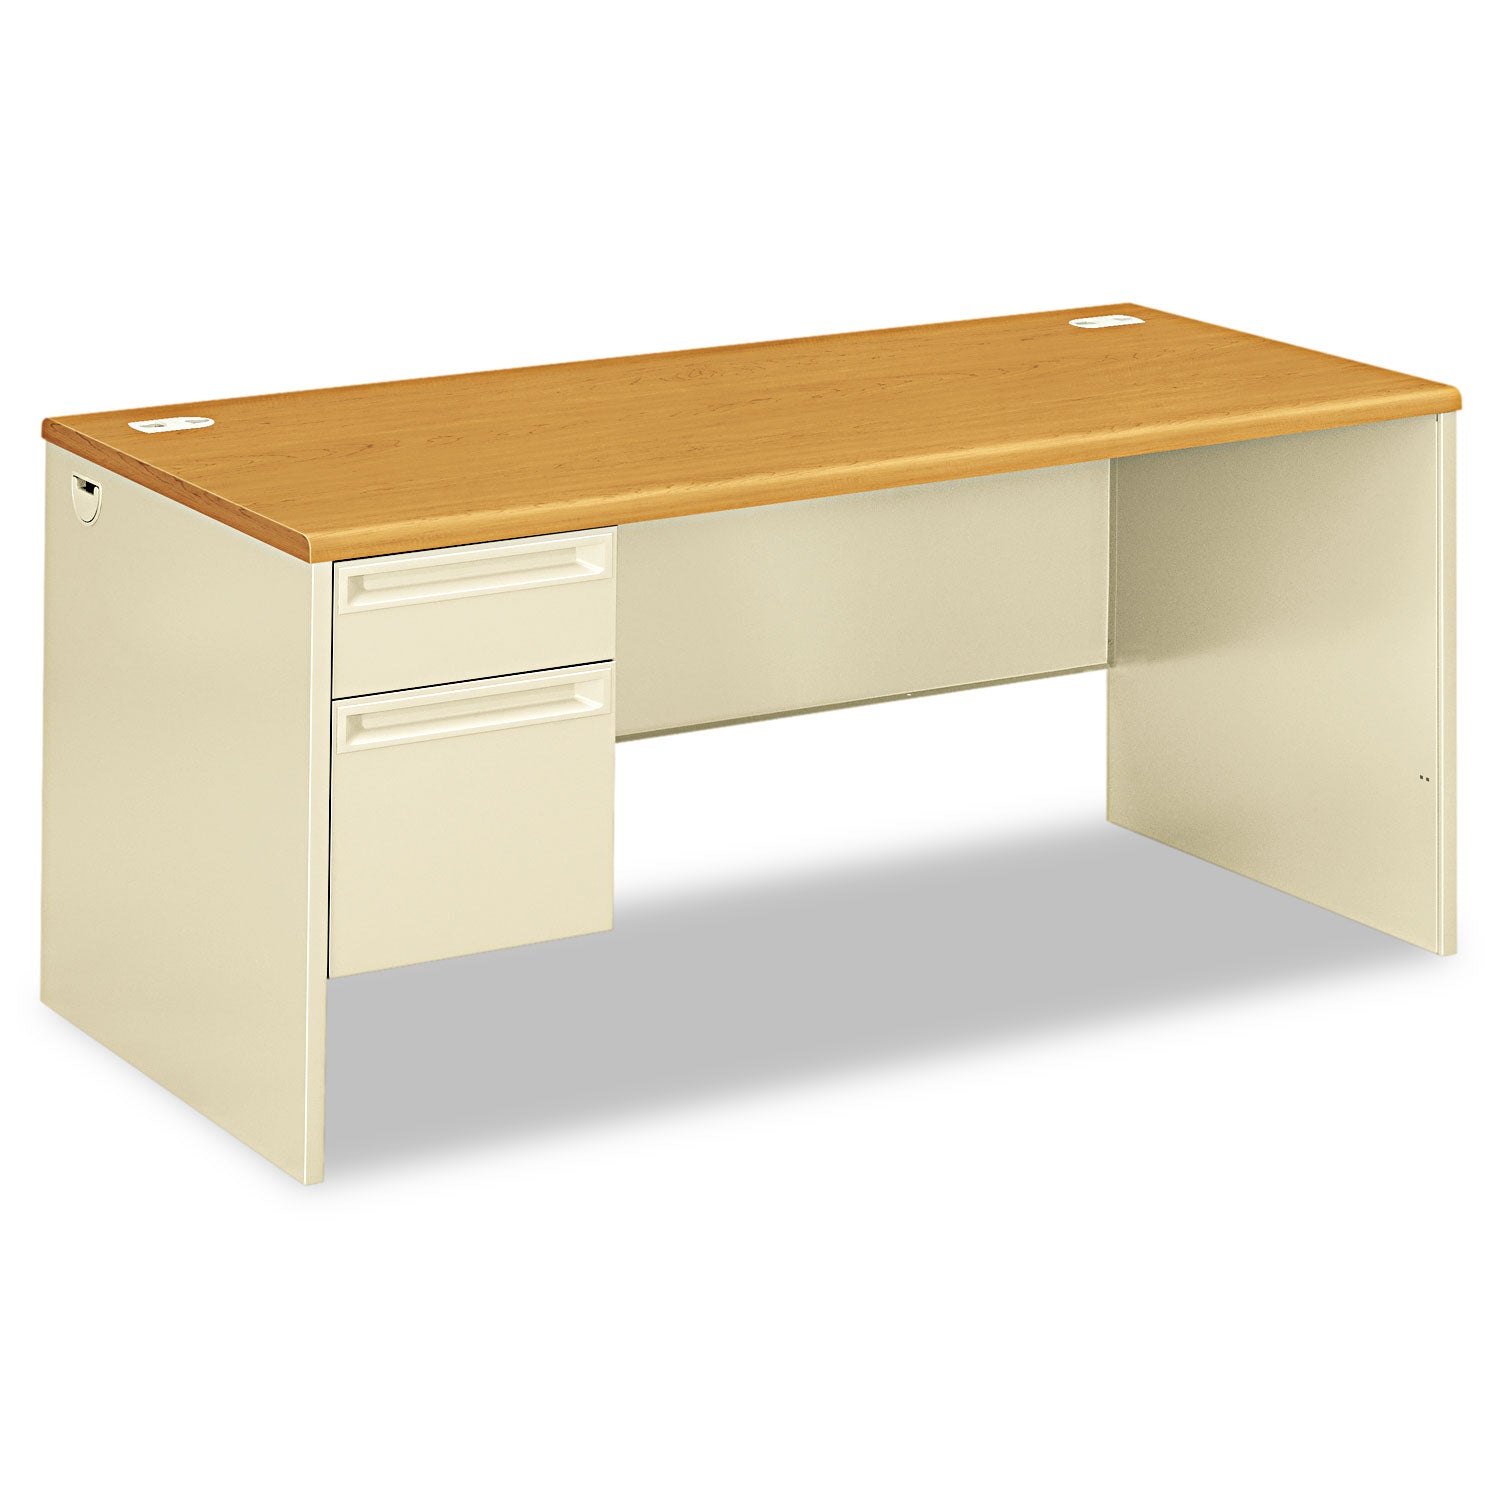 38000 Series Left Pedestal Desk, 66" x 30" x 29.5", Harvest/Putty - 